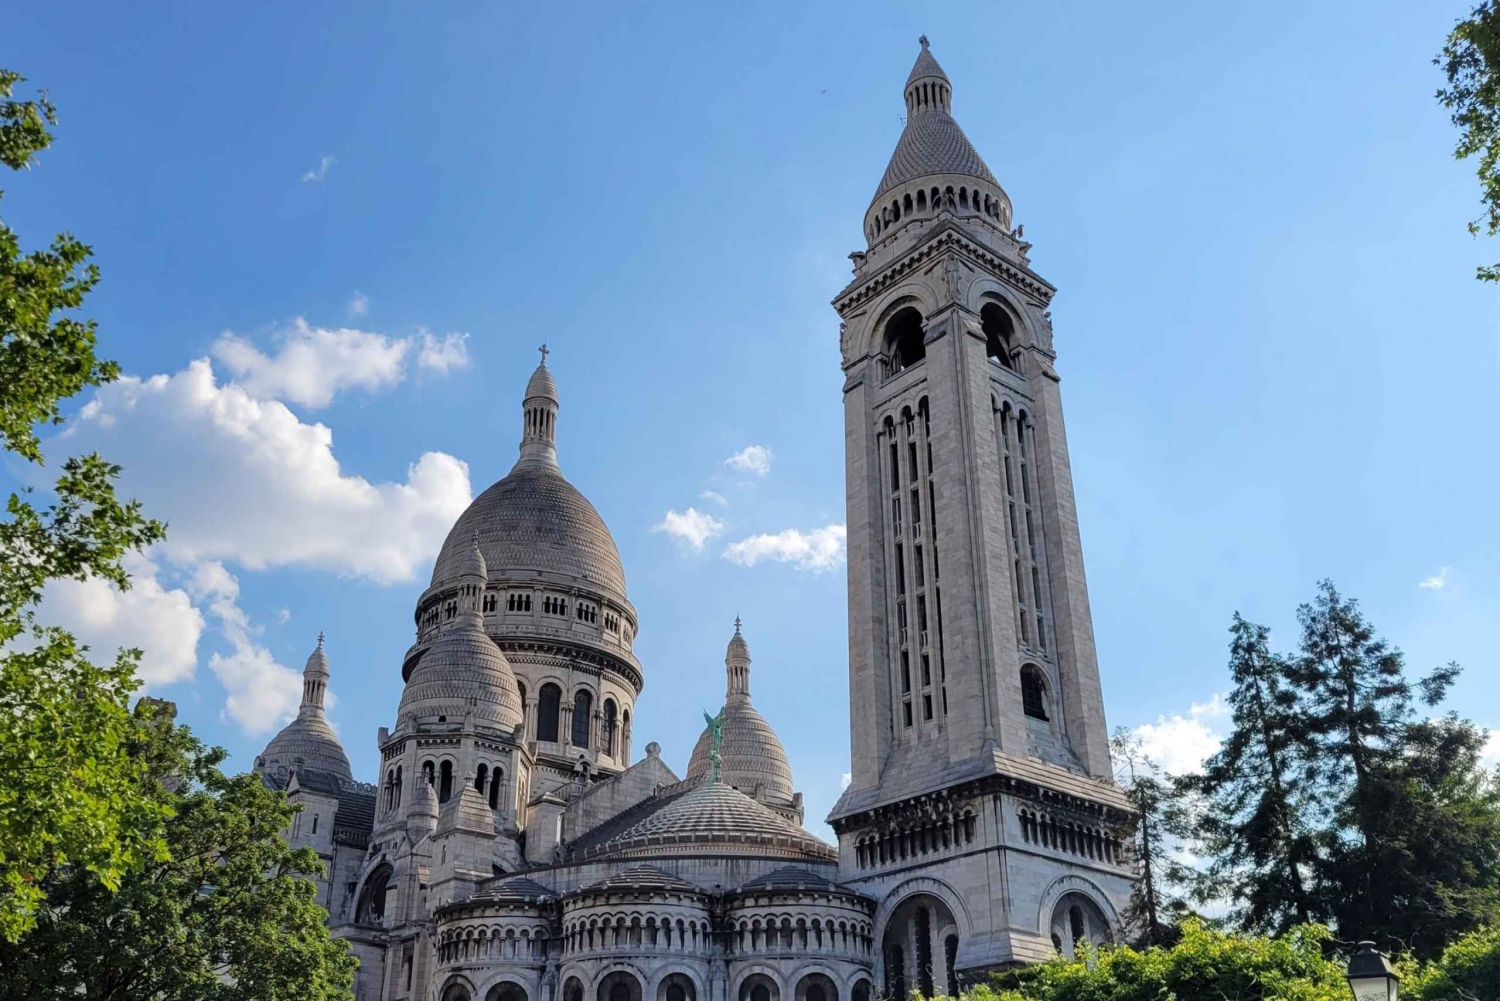 Montmartre Perfecto: burdeles, guerras y religión